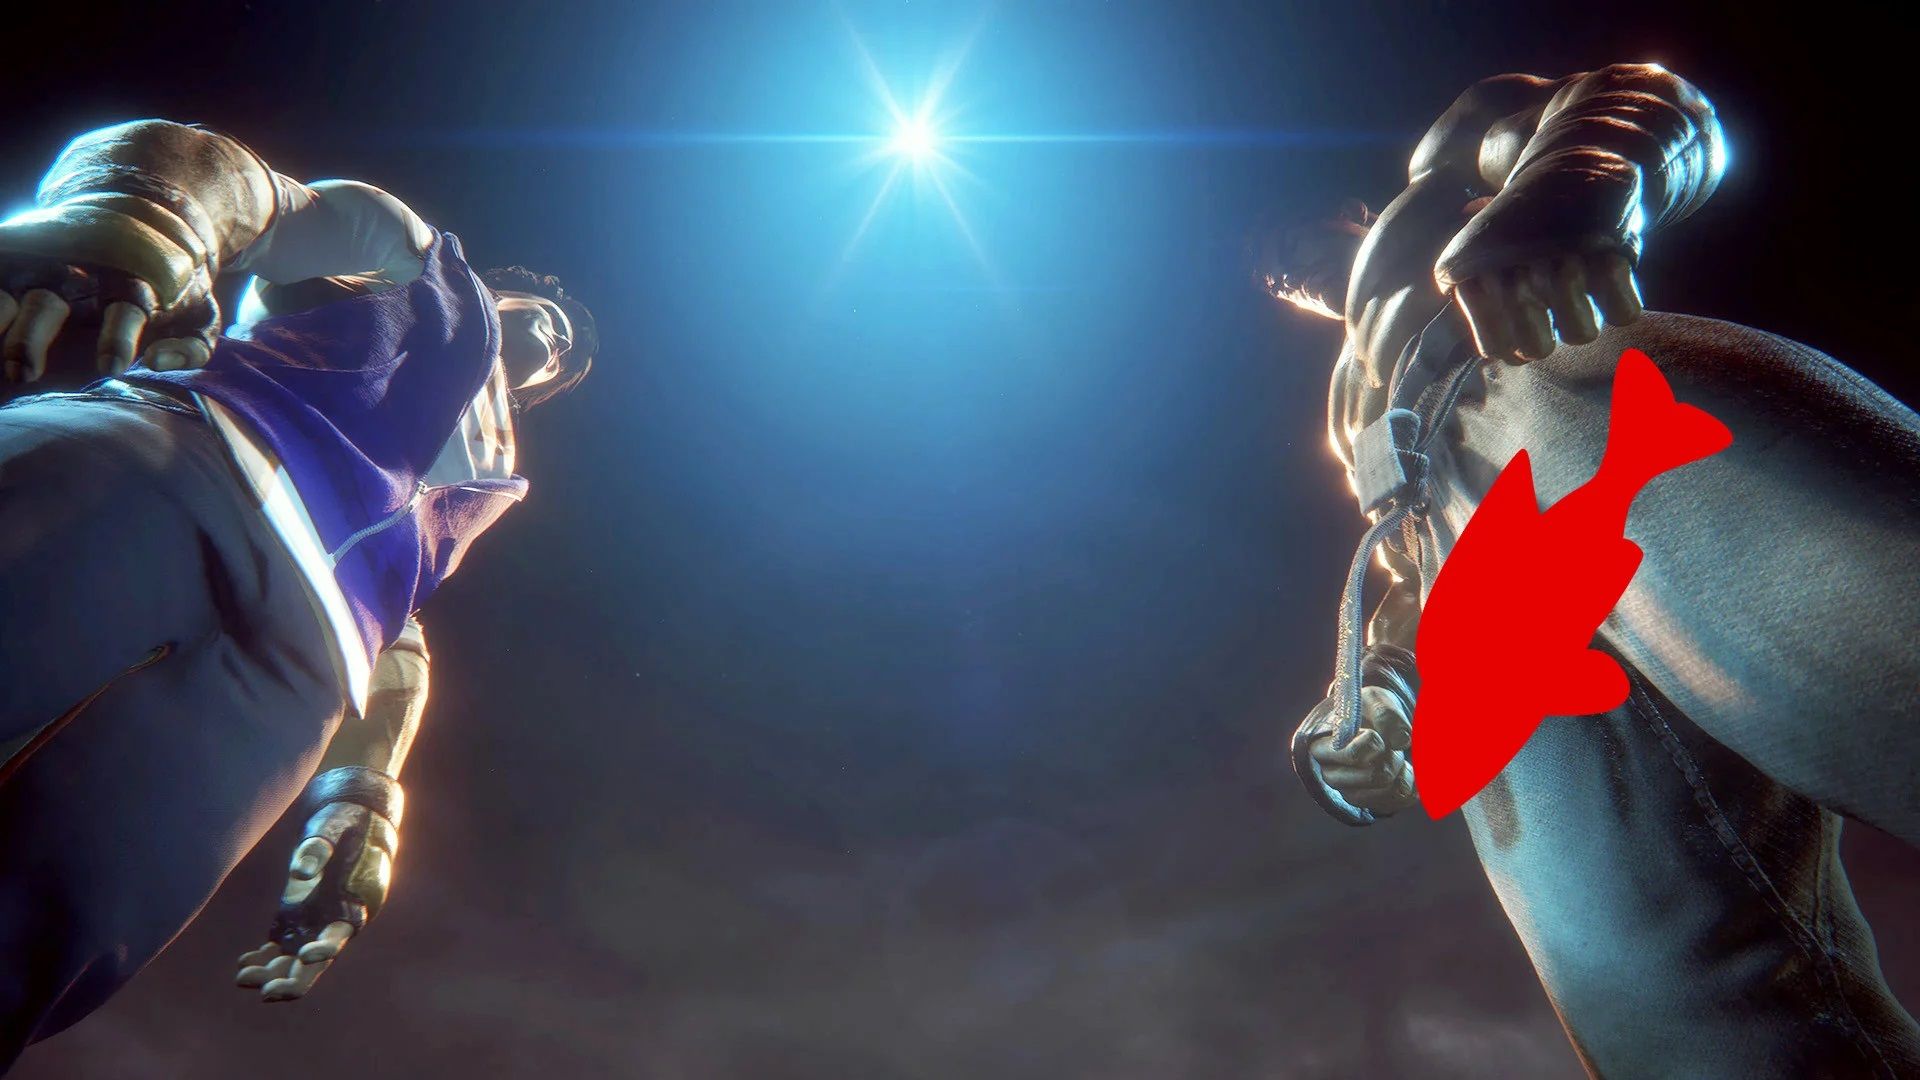 Fan hâm mộ đang phát cuồng pha “lộ hàng” của Ryu trong trailer Street Fighter 6